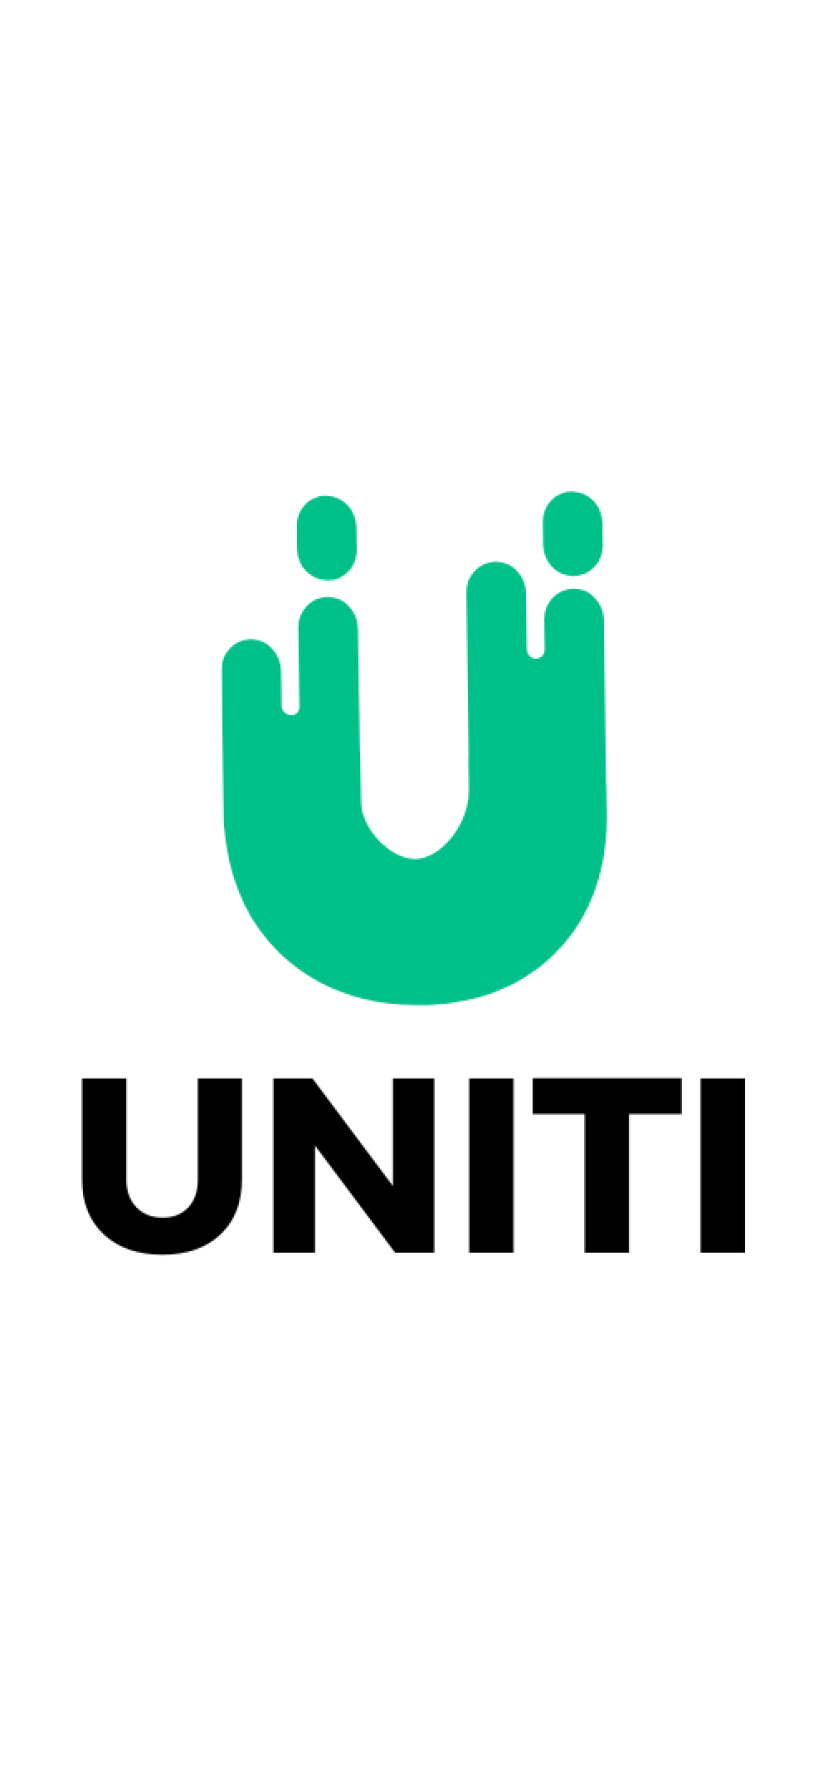 uniti.co domain name for sale